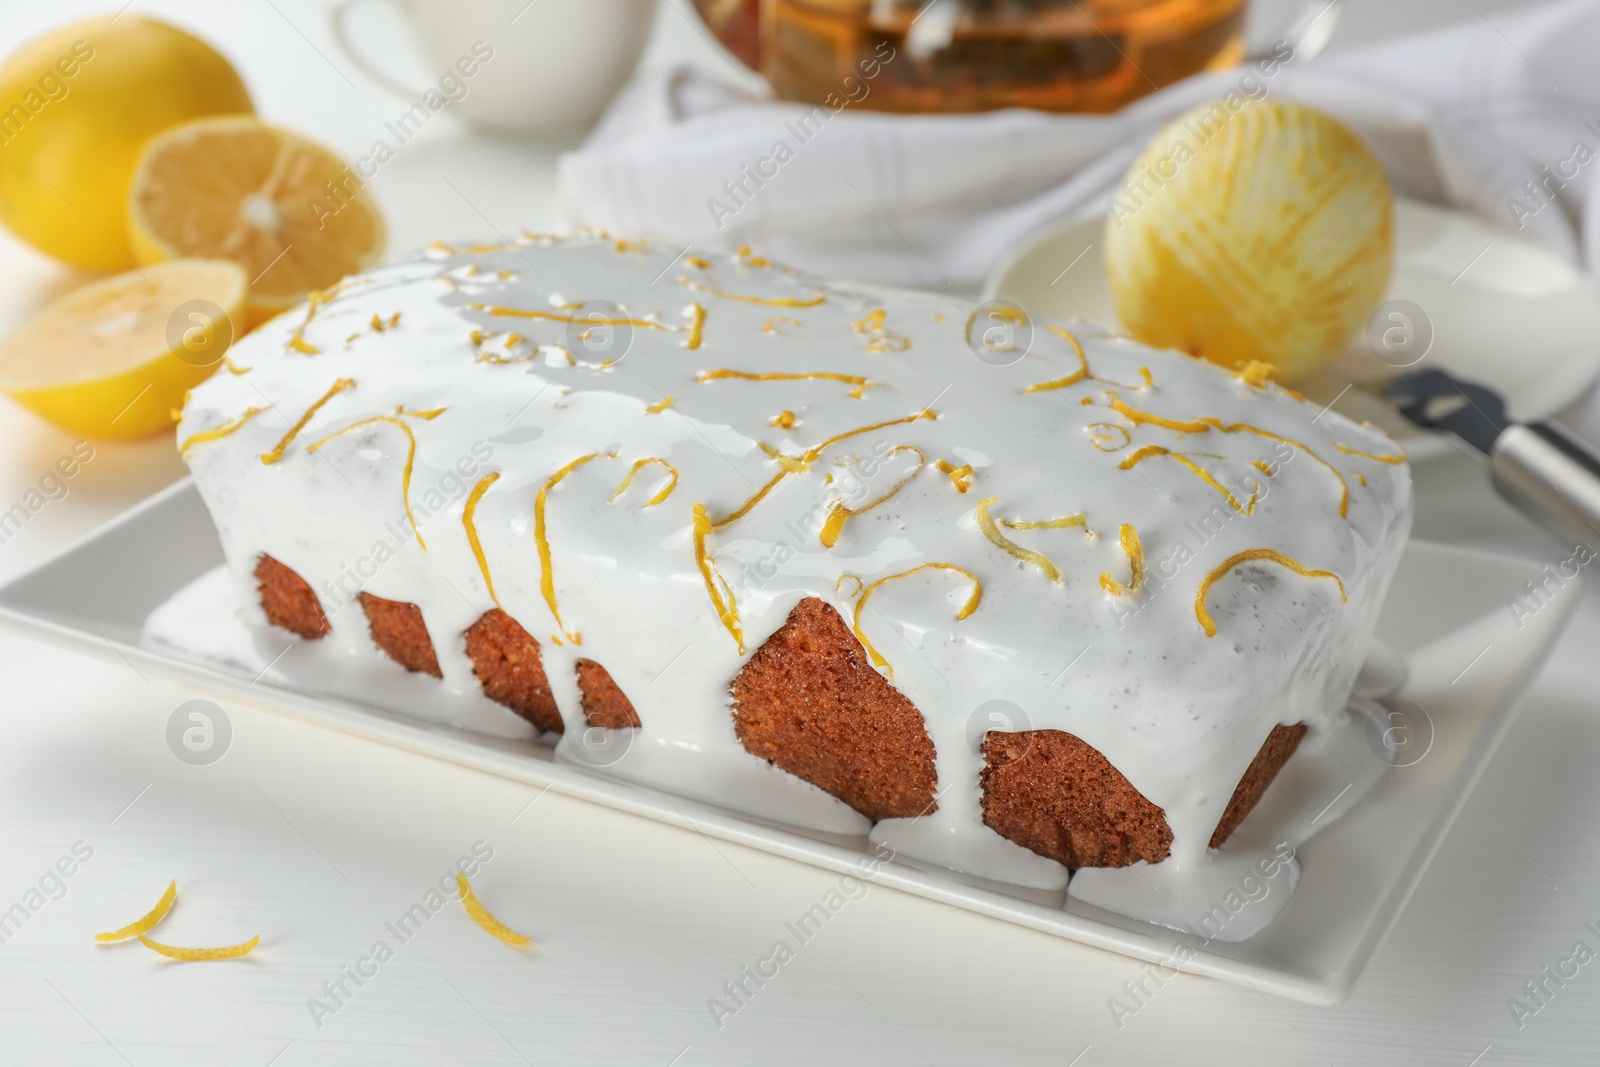 Photo of Tasty lemon cake with glaze and citrus fruits on white table